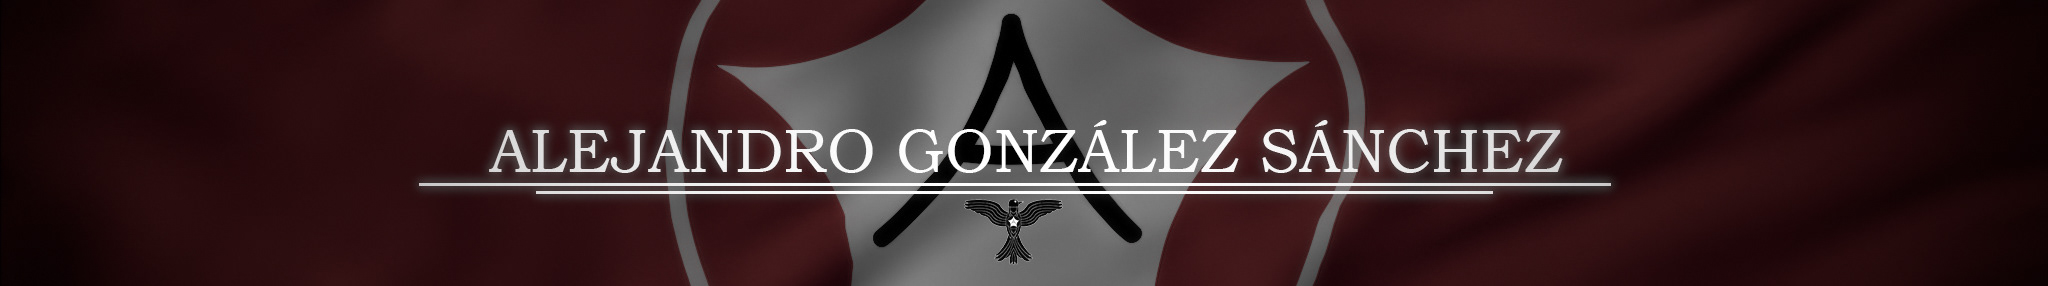 Alejandro González Sánchez's profile banner